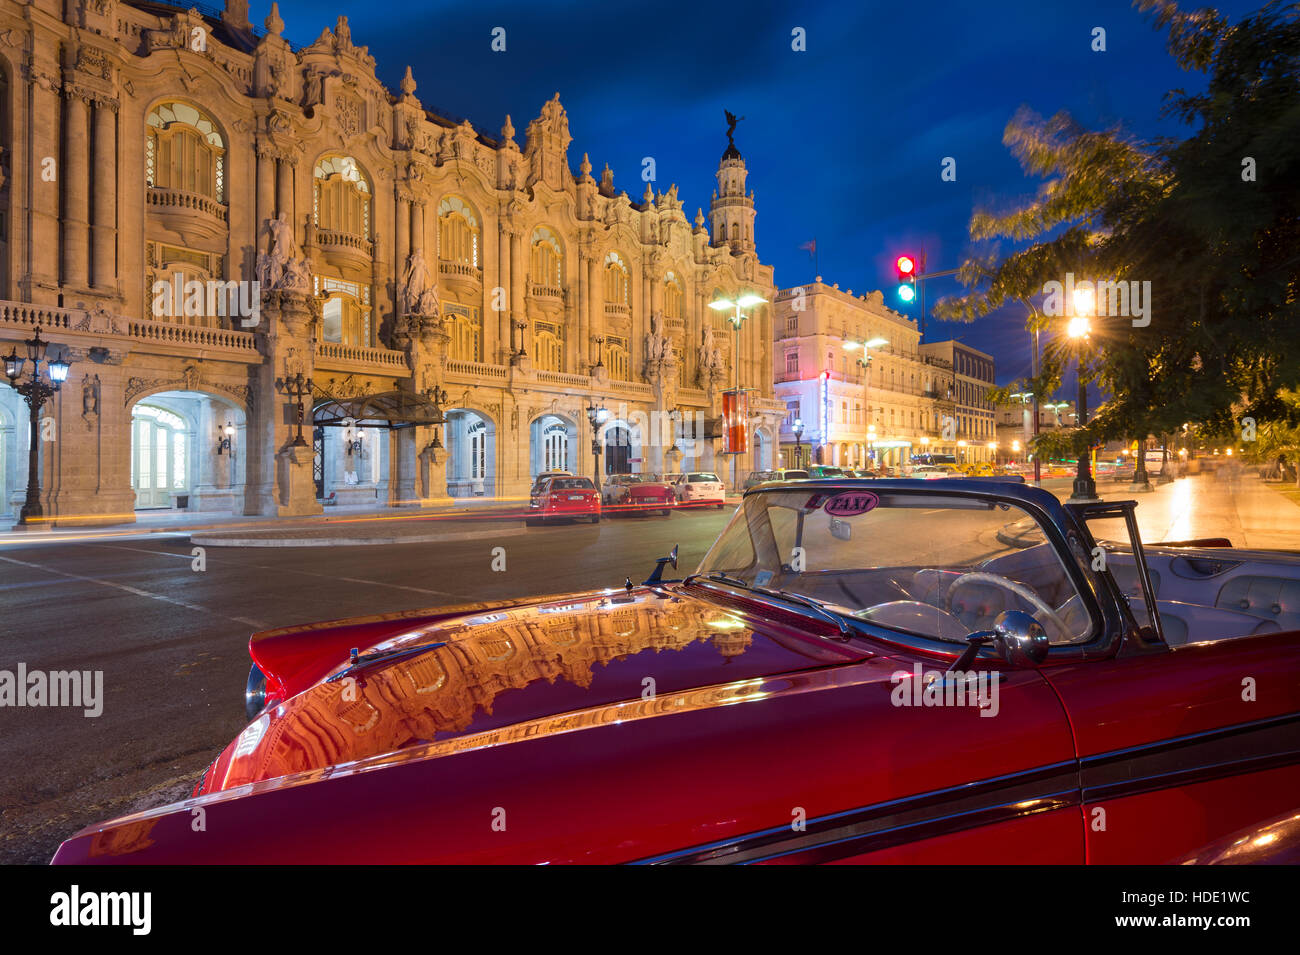 Le Gran Teatro de la Habana reflétée sur 1950 taxi américain sur le Paseo de Marti dans la nuit, La Havane Banque D'Images